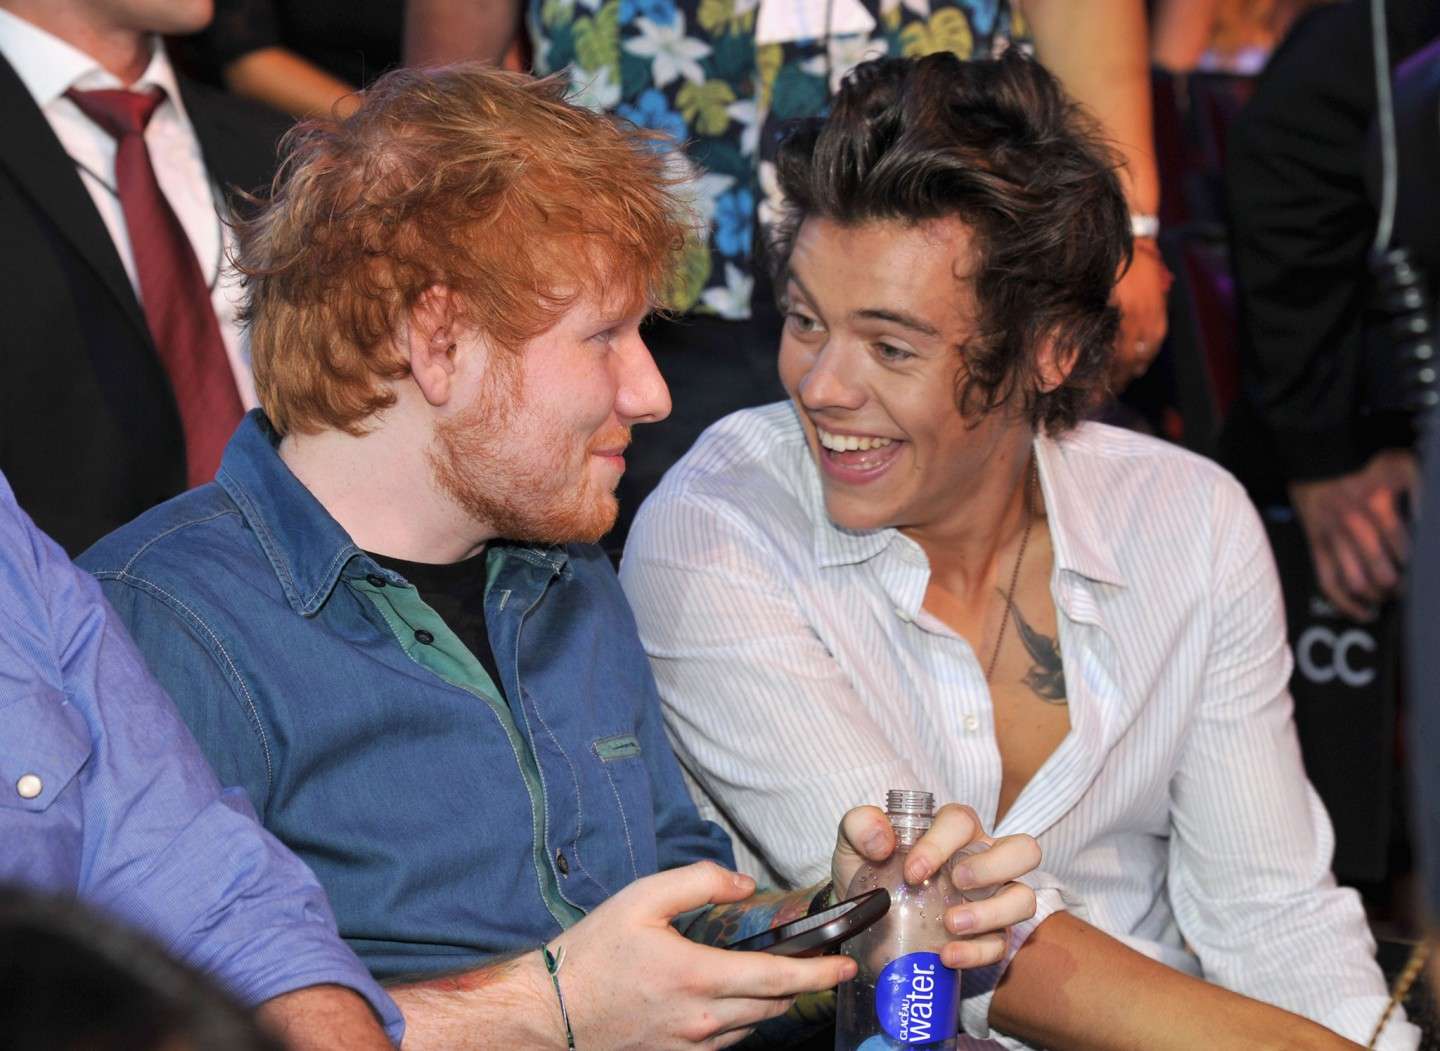 Ed Sheeran e Harry Styles